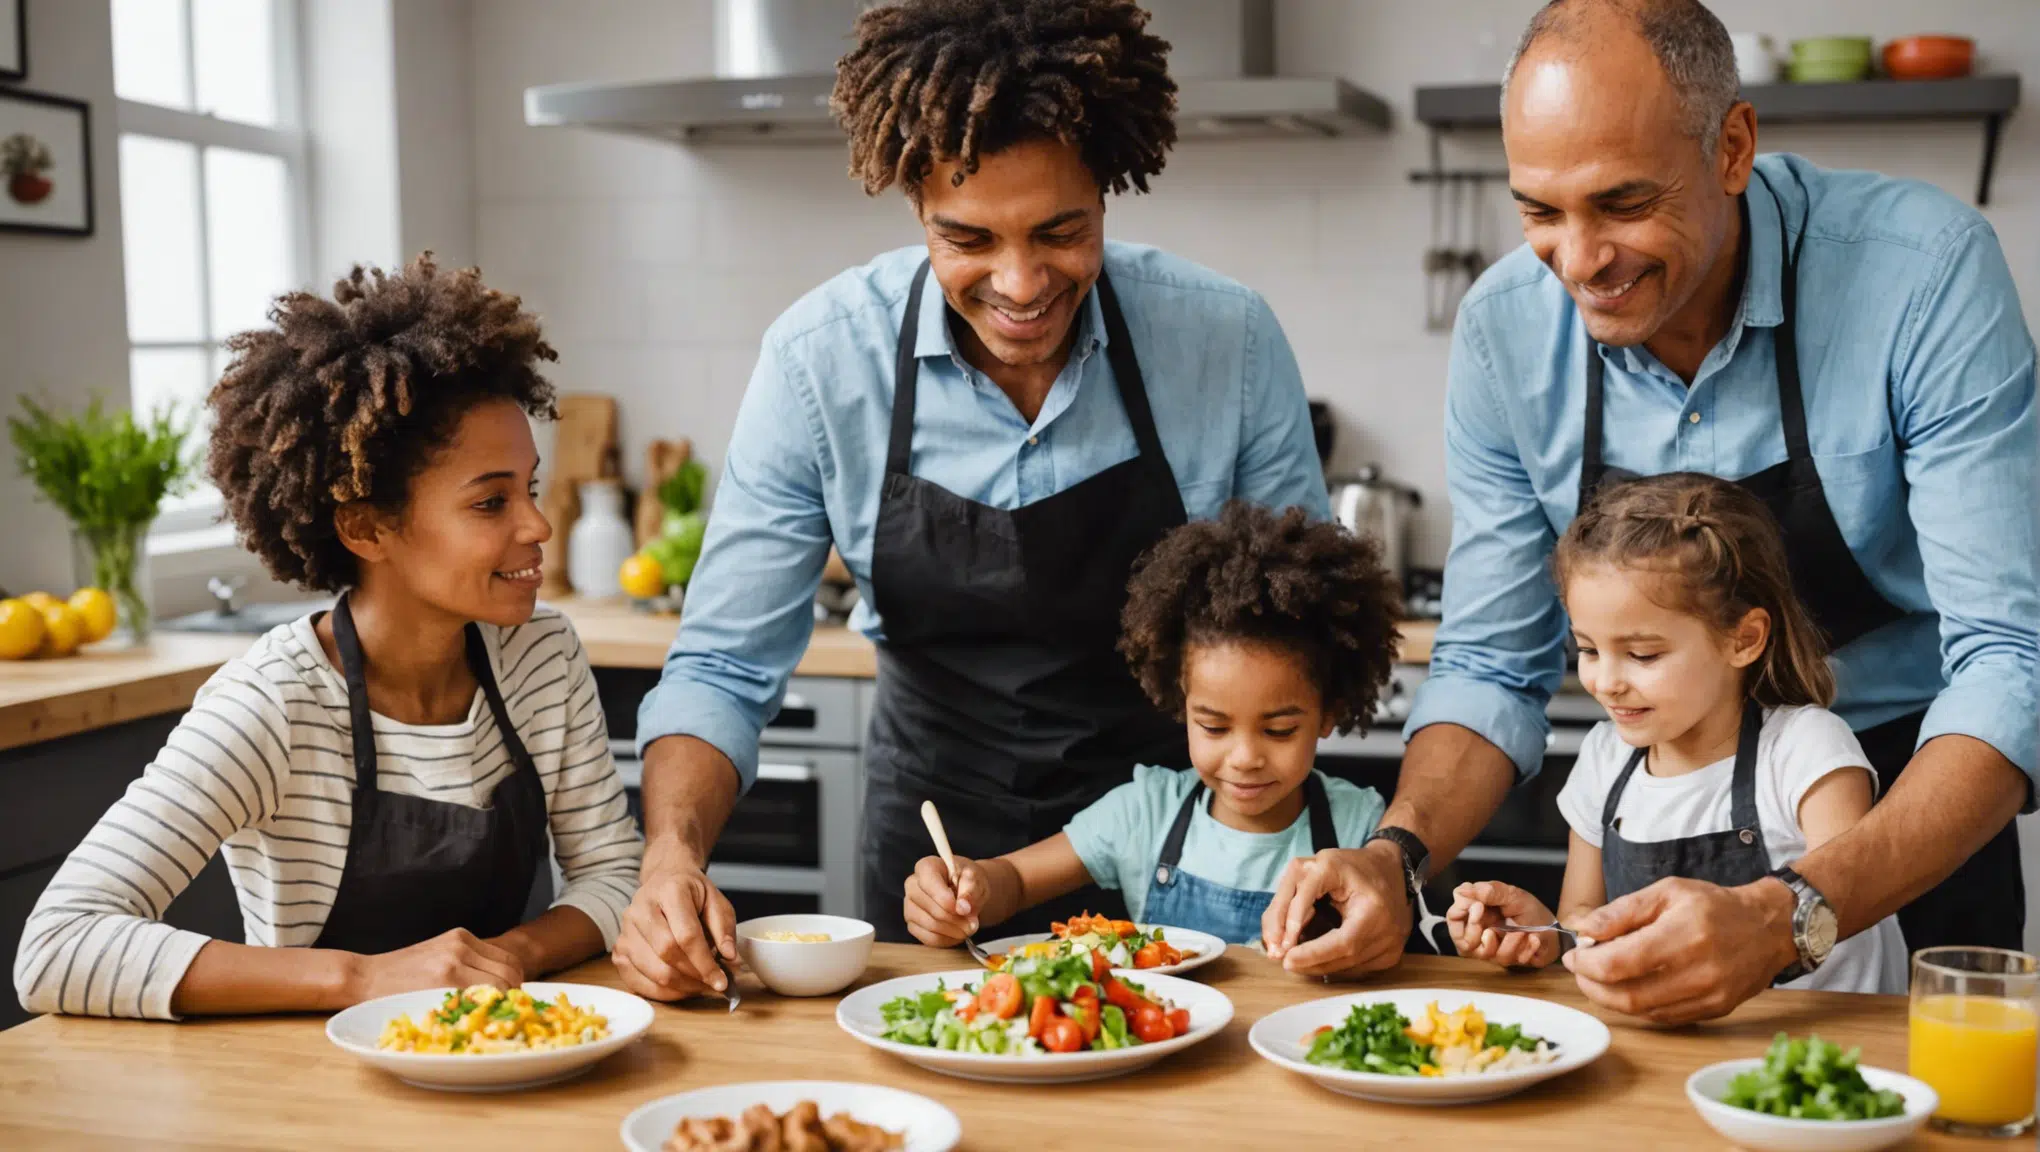 découvrez des idées d'activités culinaires divertissantes pour partager des moments inoubliables en famille.